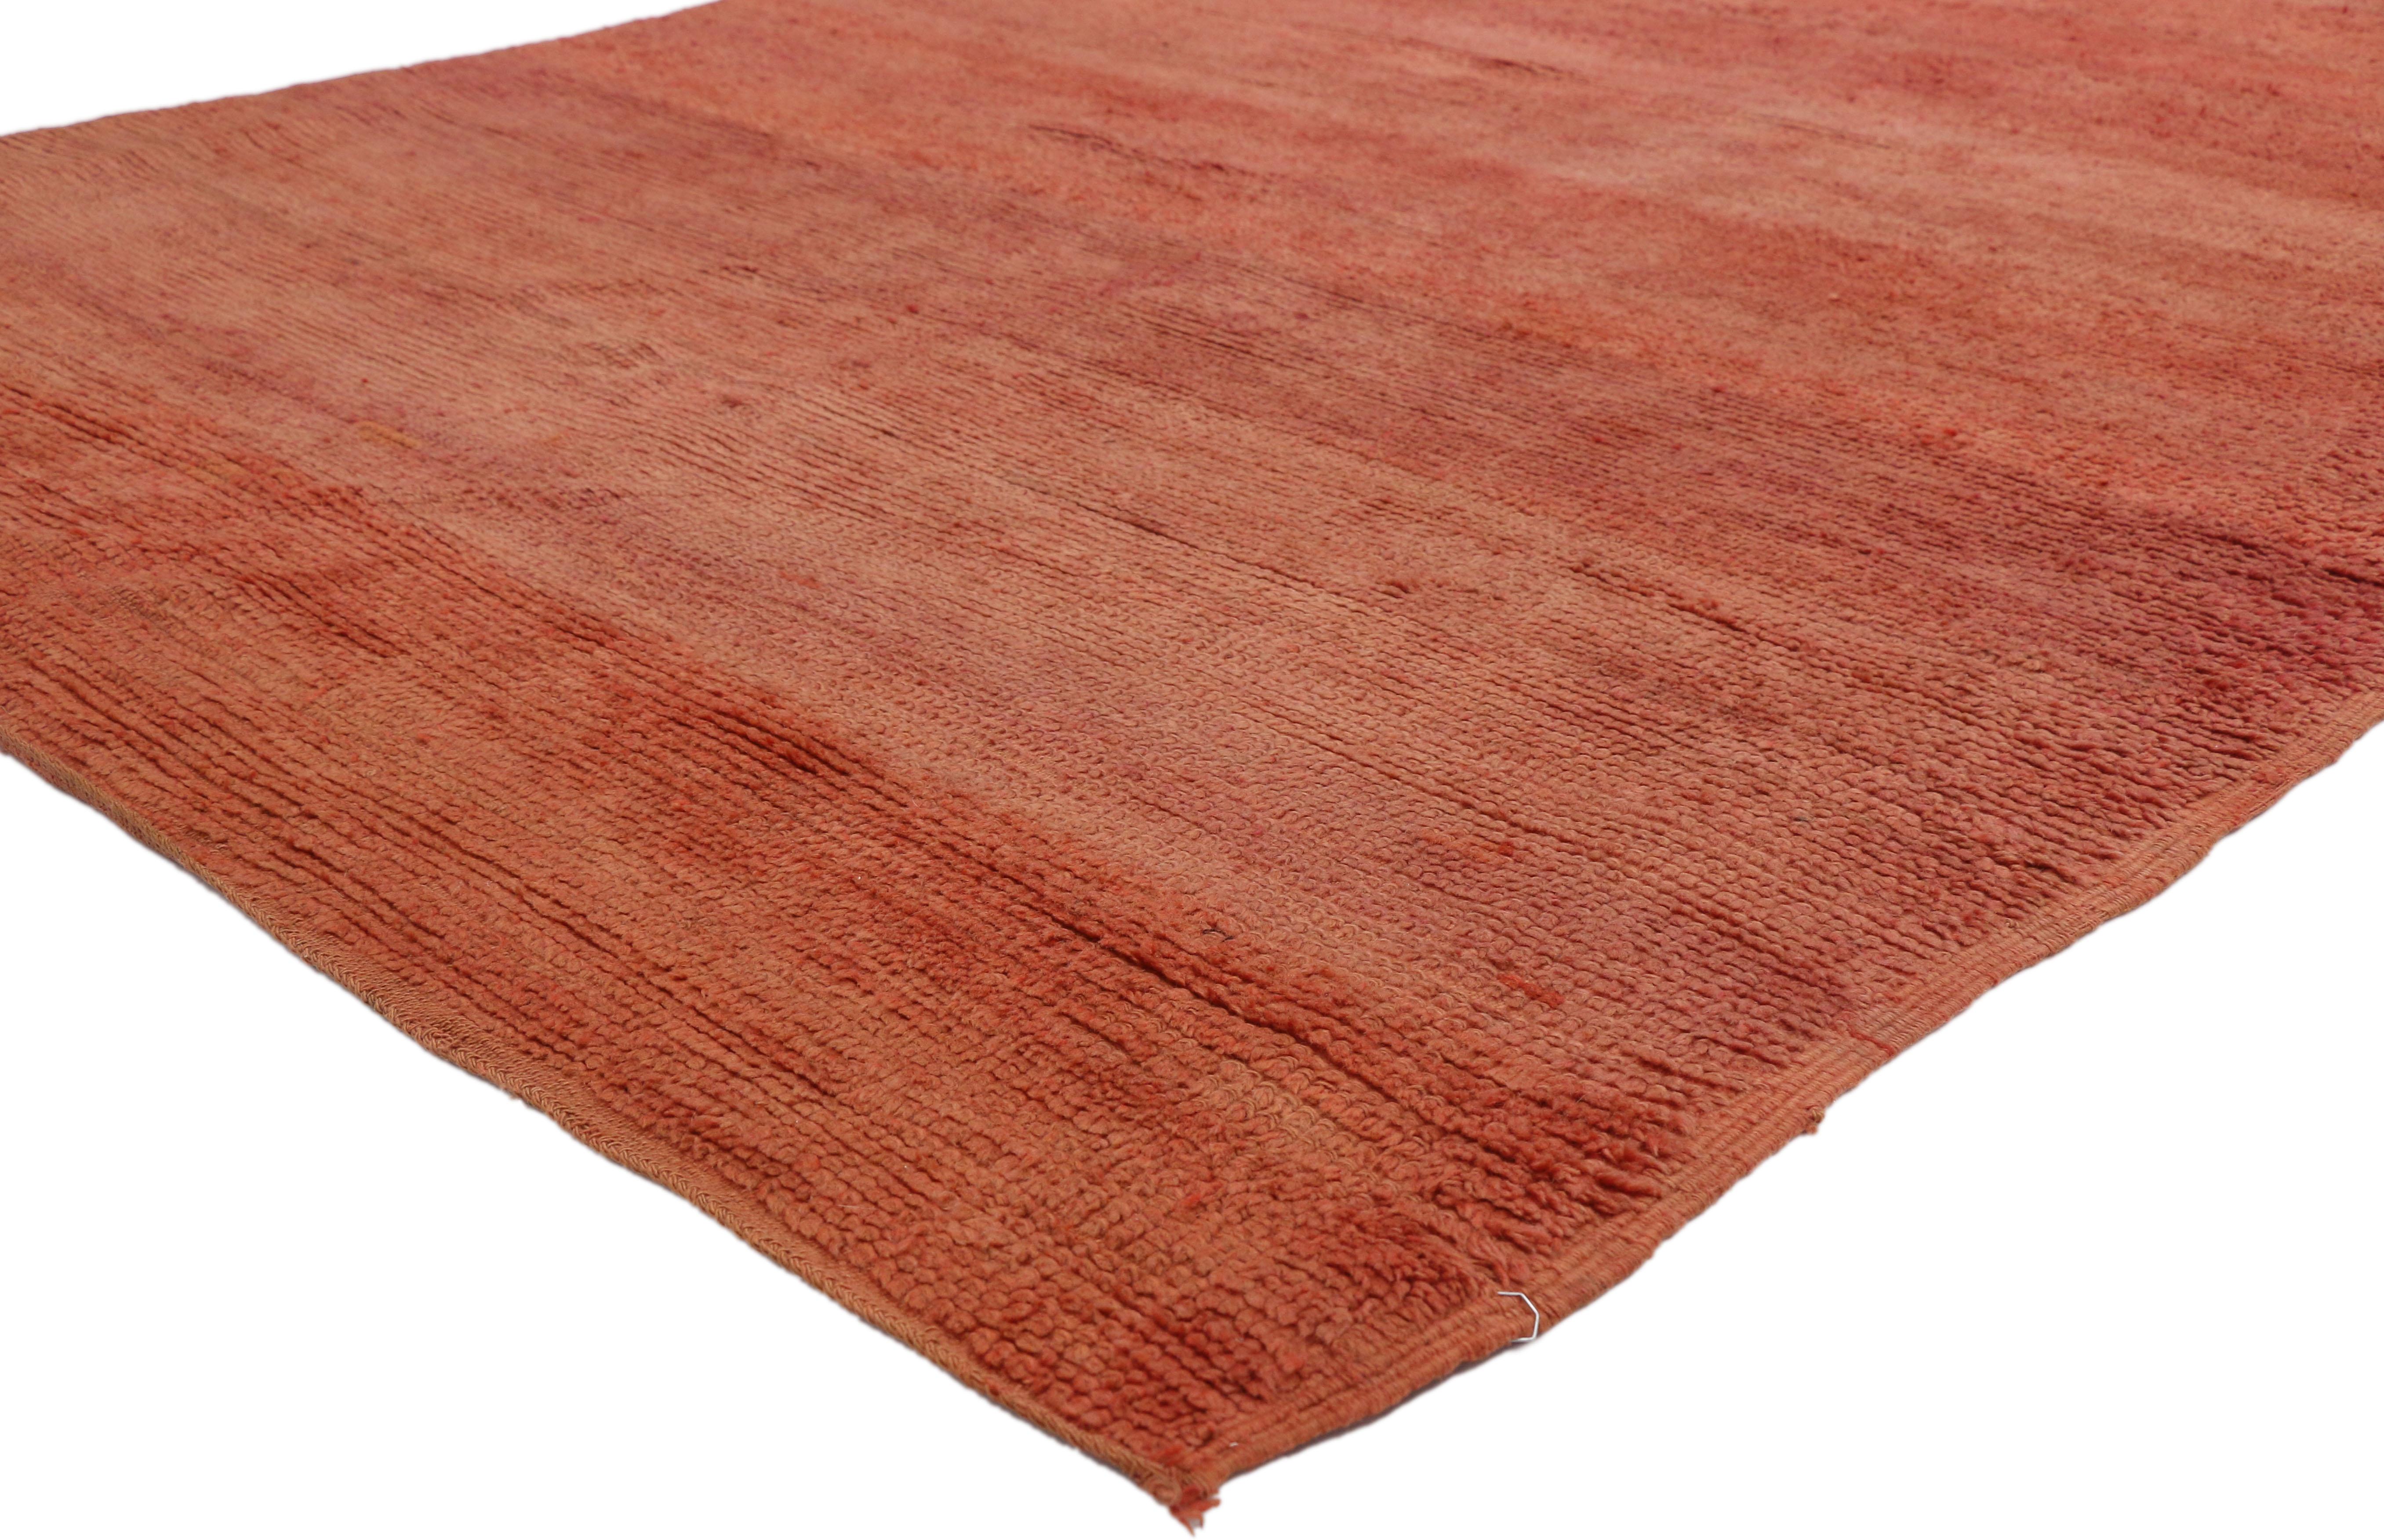 20210 Vintage Rot Beni Mrirt Marokkanischer Teppich, 06'04 x 10'04. Beni Mrirt-Teppiche verkörpern die geschätzte Tradition der marokkanischen Weberei, die für ihre üppige Textur, geometrischen Motive und ruhigen Erdtöne bekannt ist. Diese Teppiche